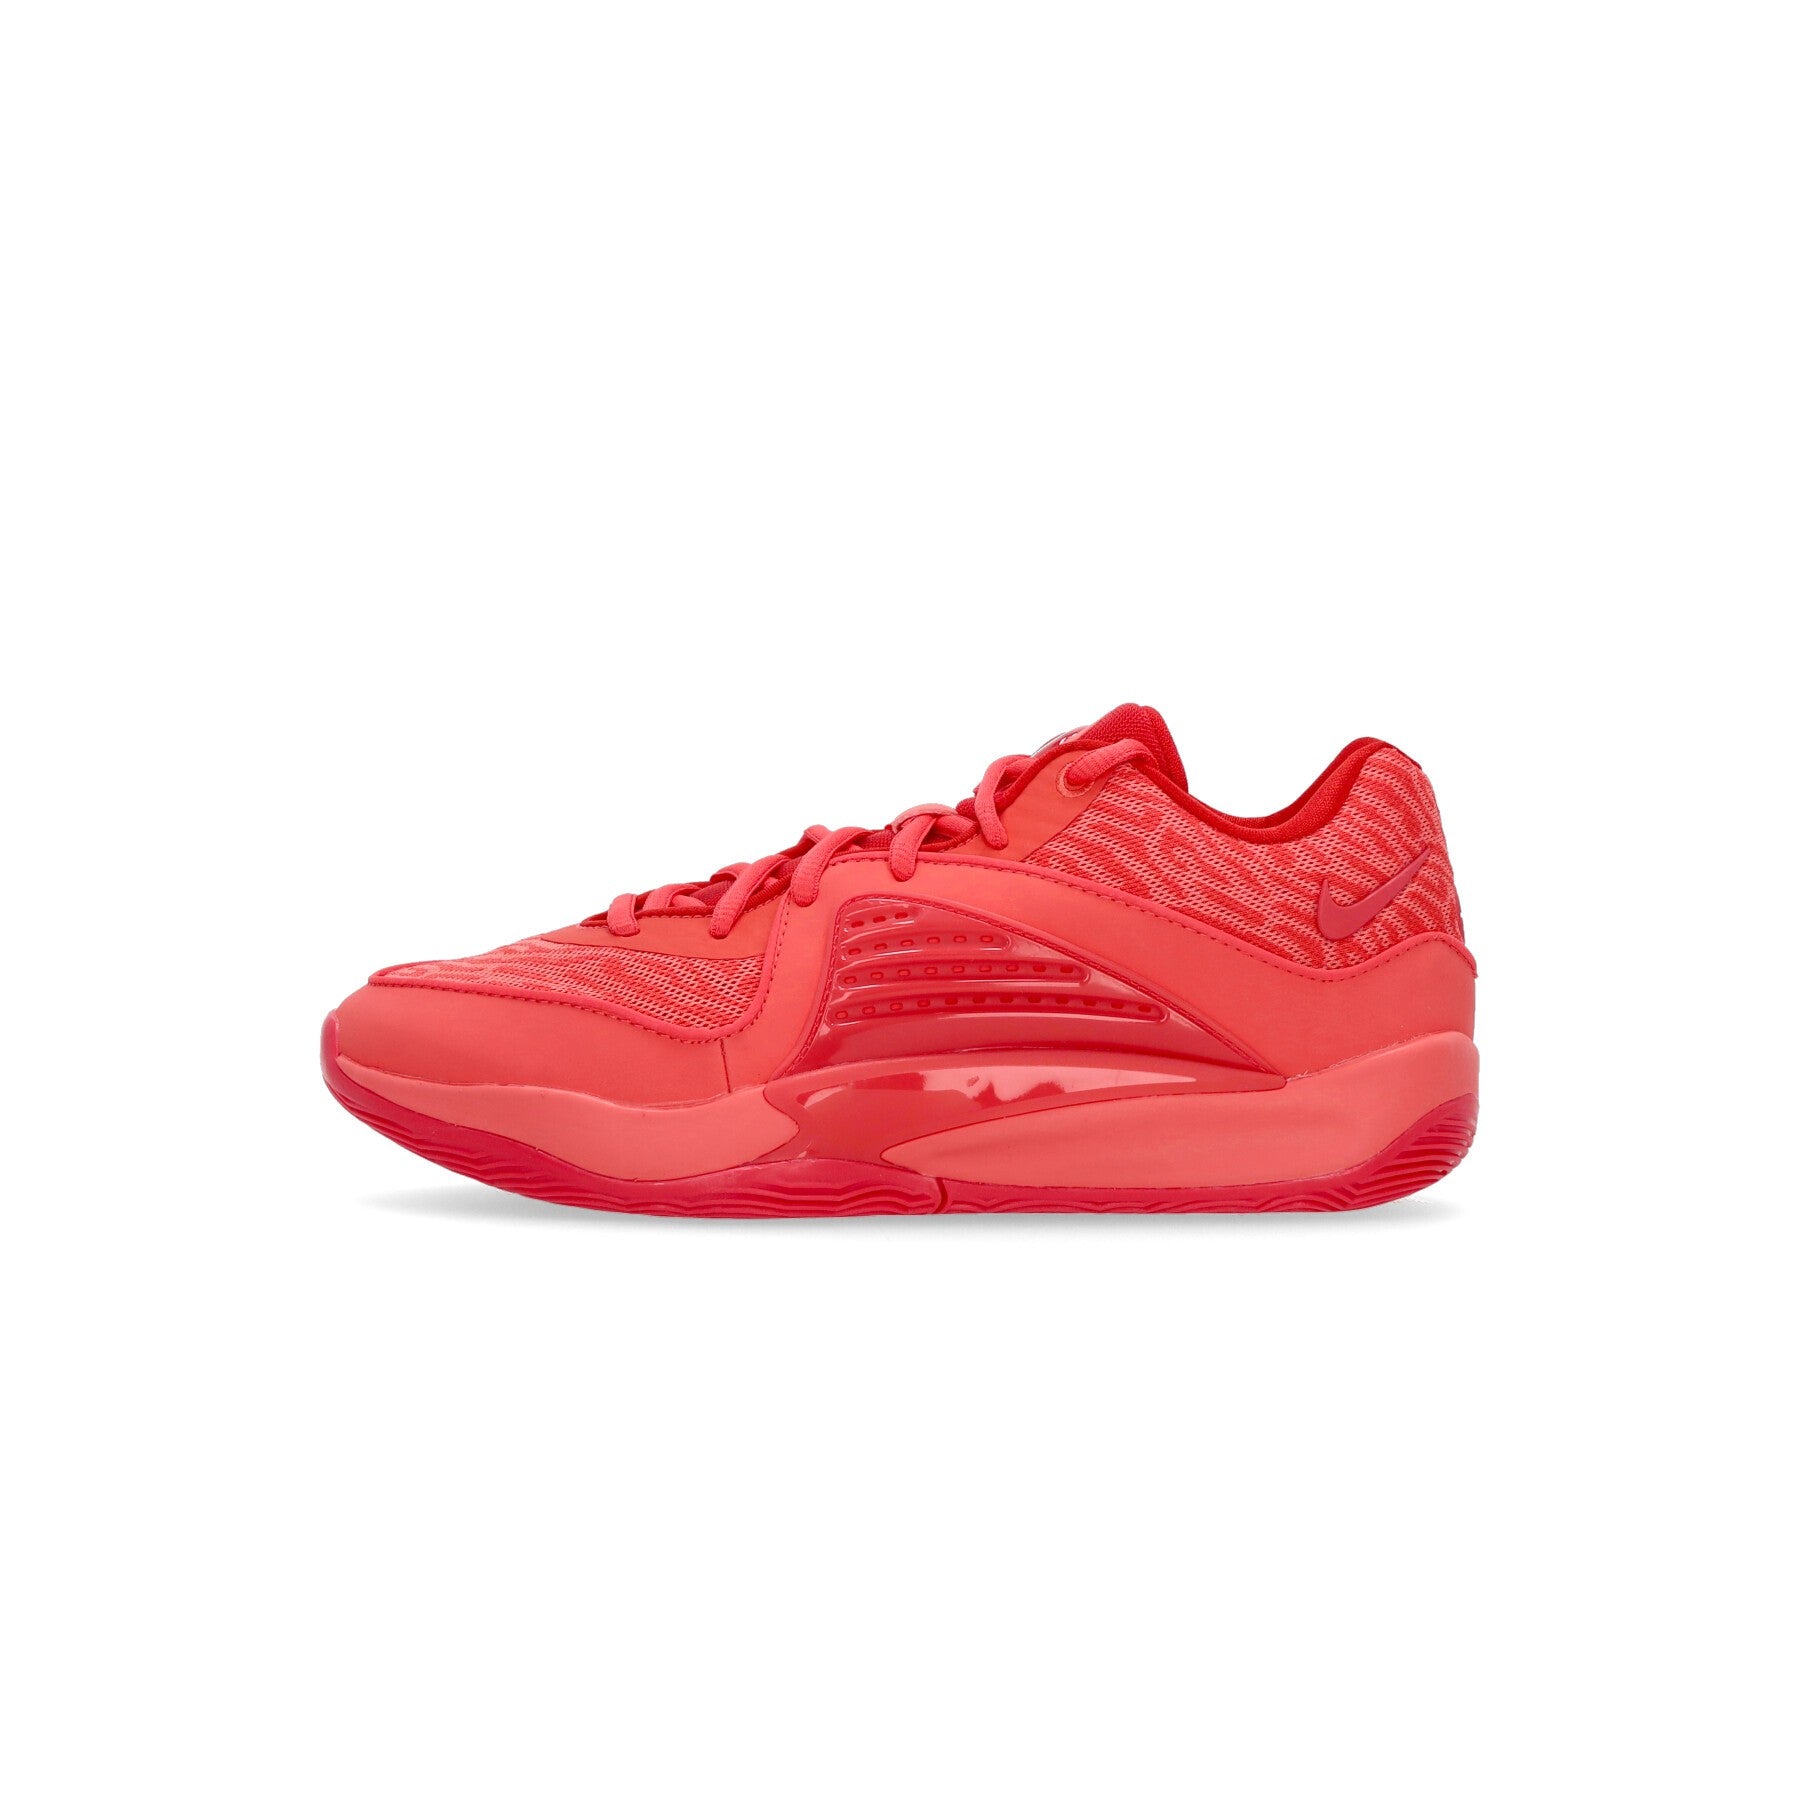 Nike Nba, Scarpa Basket Uomo Kd16, Ember Glow/university Red/lt Fusion Red